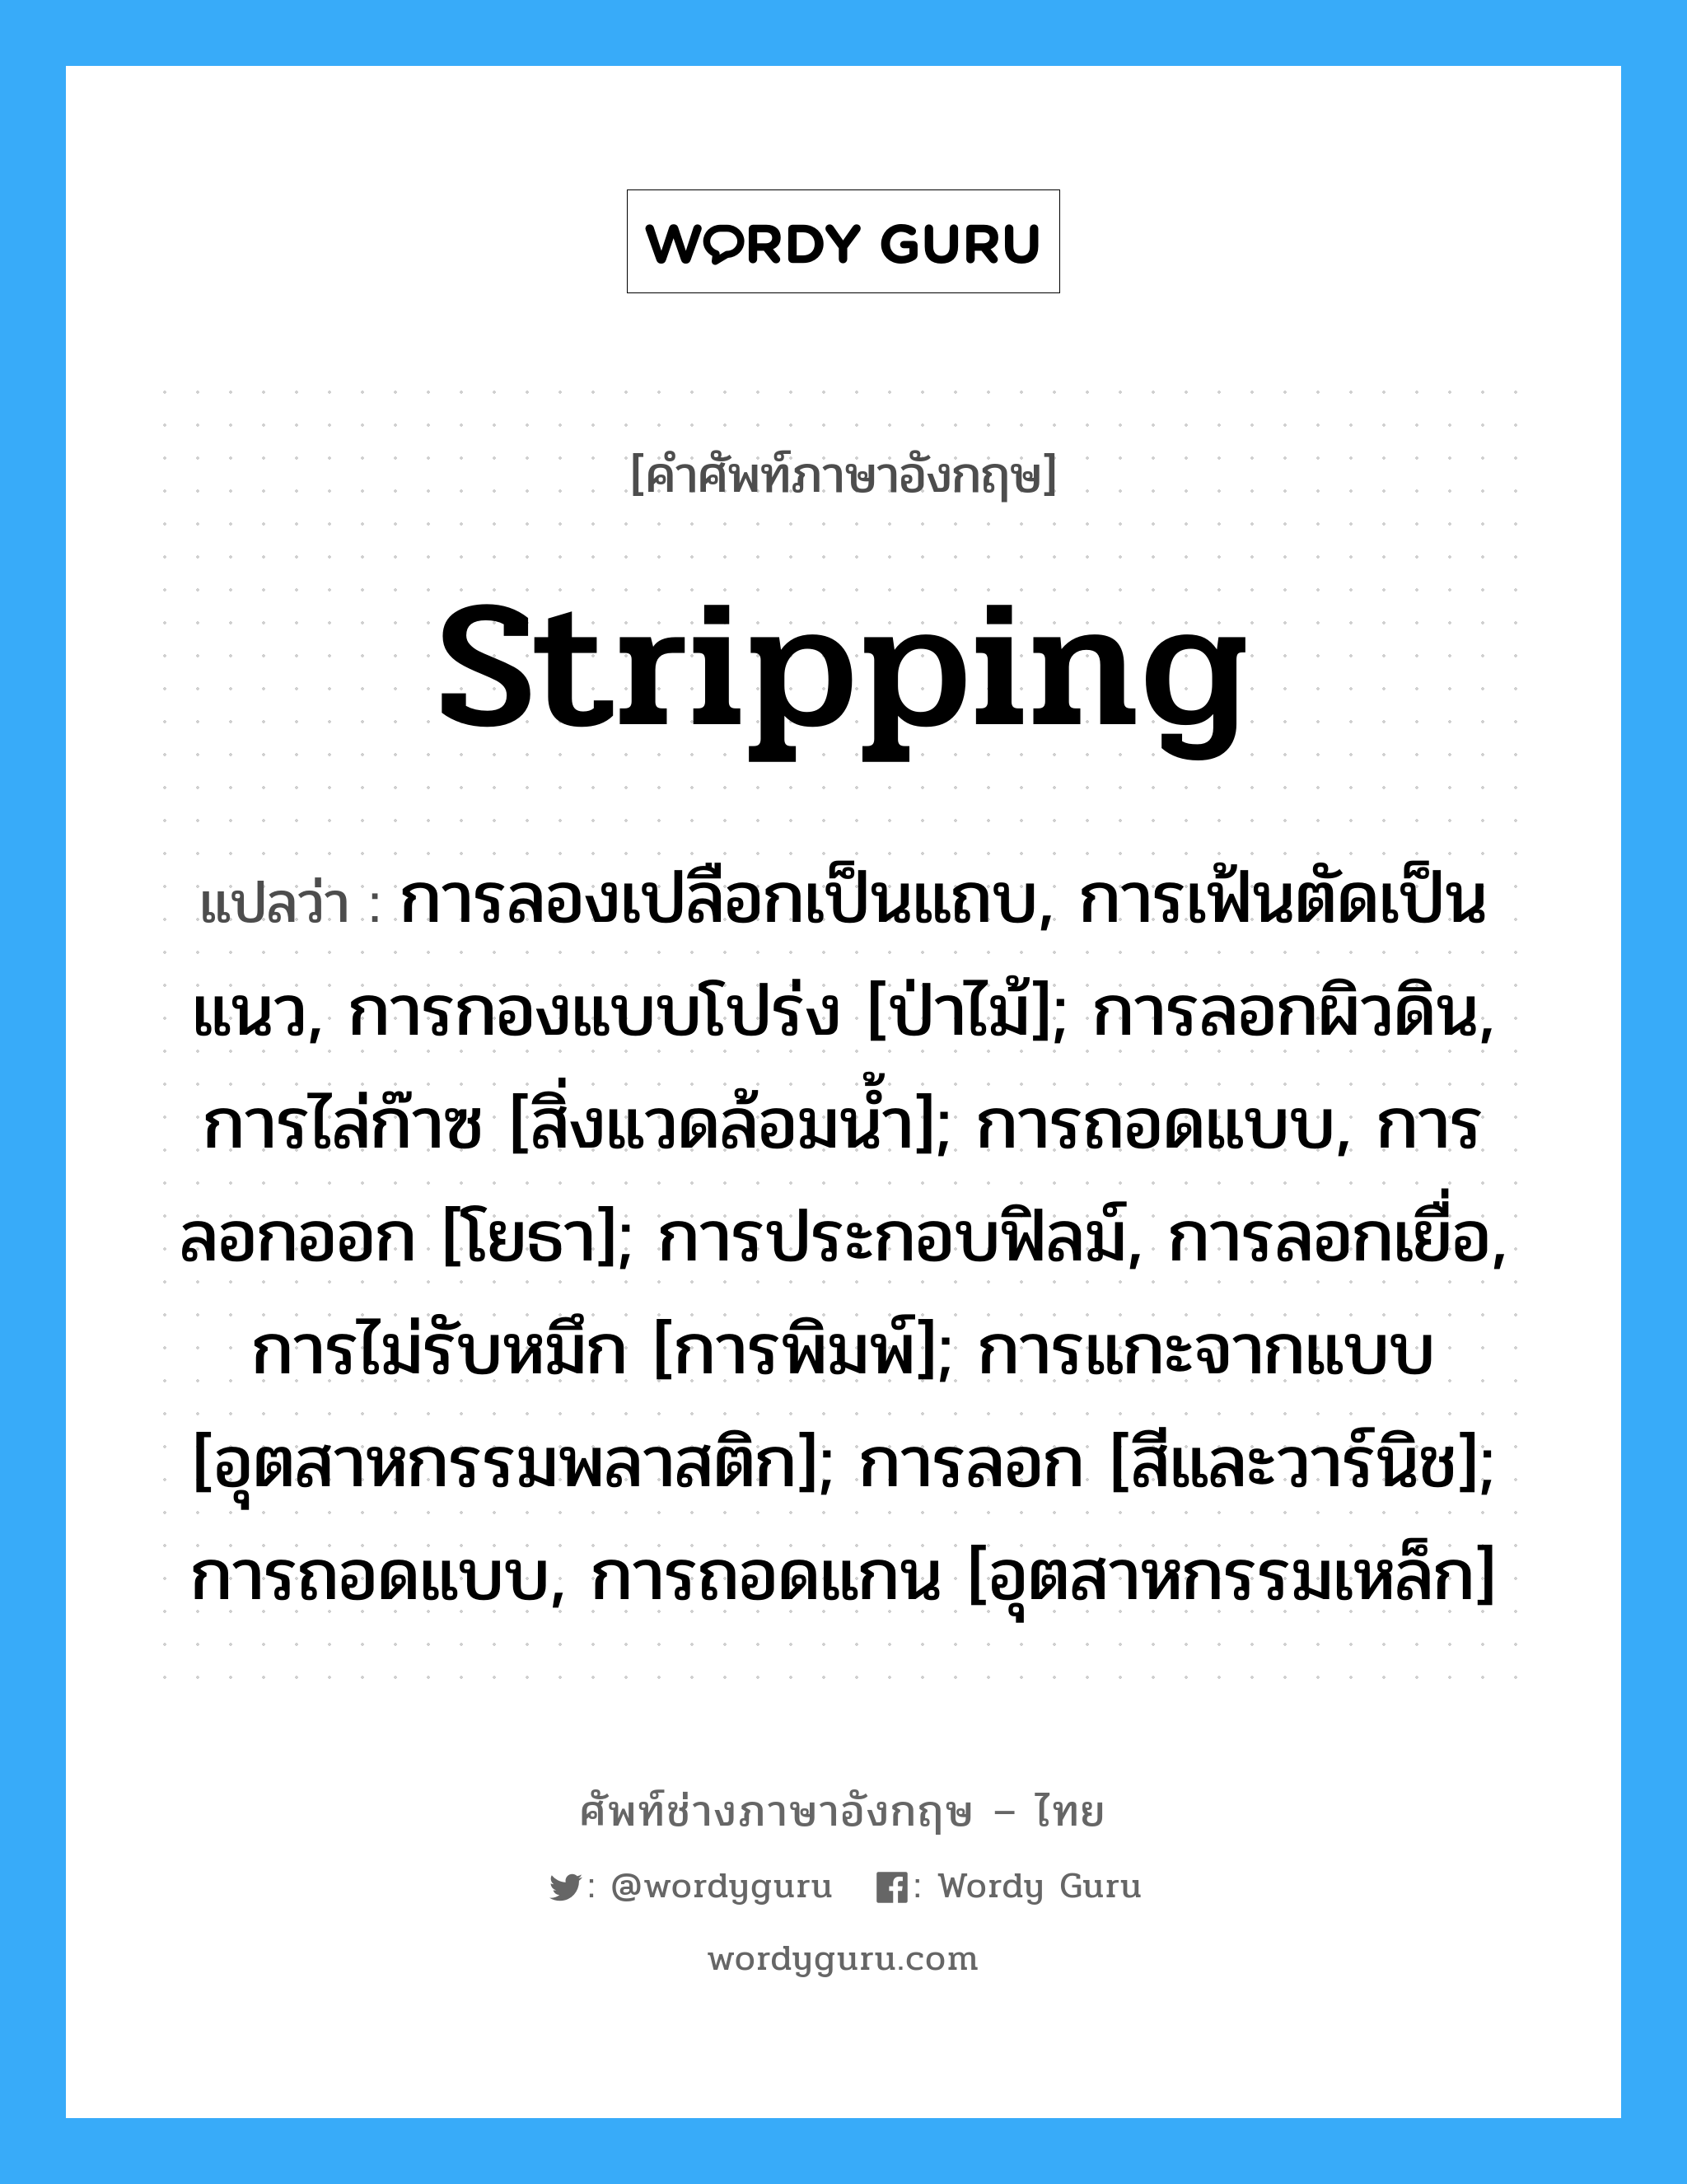 stripping แปลว่า?, คำศัพท์ช่างภาษาอังกฤษ - ไทย stripping คำศัพท์ภาษาอังกฤษ stripping แปลว่า การลองเปลือกเป็นแถบ, การเฟ้นตัดเป็นแนว, การกองแบบโปร่ง [ป่าไม้]; การลอกผิวดิน, การไล่ก๊าซ [สิ่งแวดล้อมน้ำ]; การถอดแบบ, การลอกออก [โยธา]; การประกอบฟิลม์, การลอกเยื่อ, การไม่รับหมึก [การพิมพ์]; การแกะจากแบบ [อุตสาหกรรมพลาสติก]; การลอก [สีและวาร์นิช]; การถอดแบบ, การถอดแกน [อุตสาหกรรมเหล็ก]